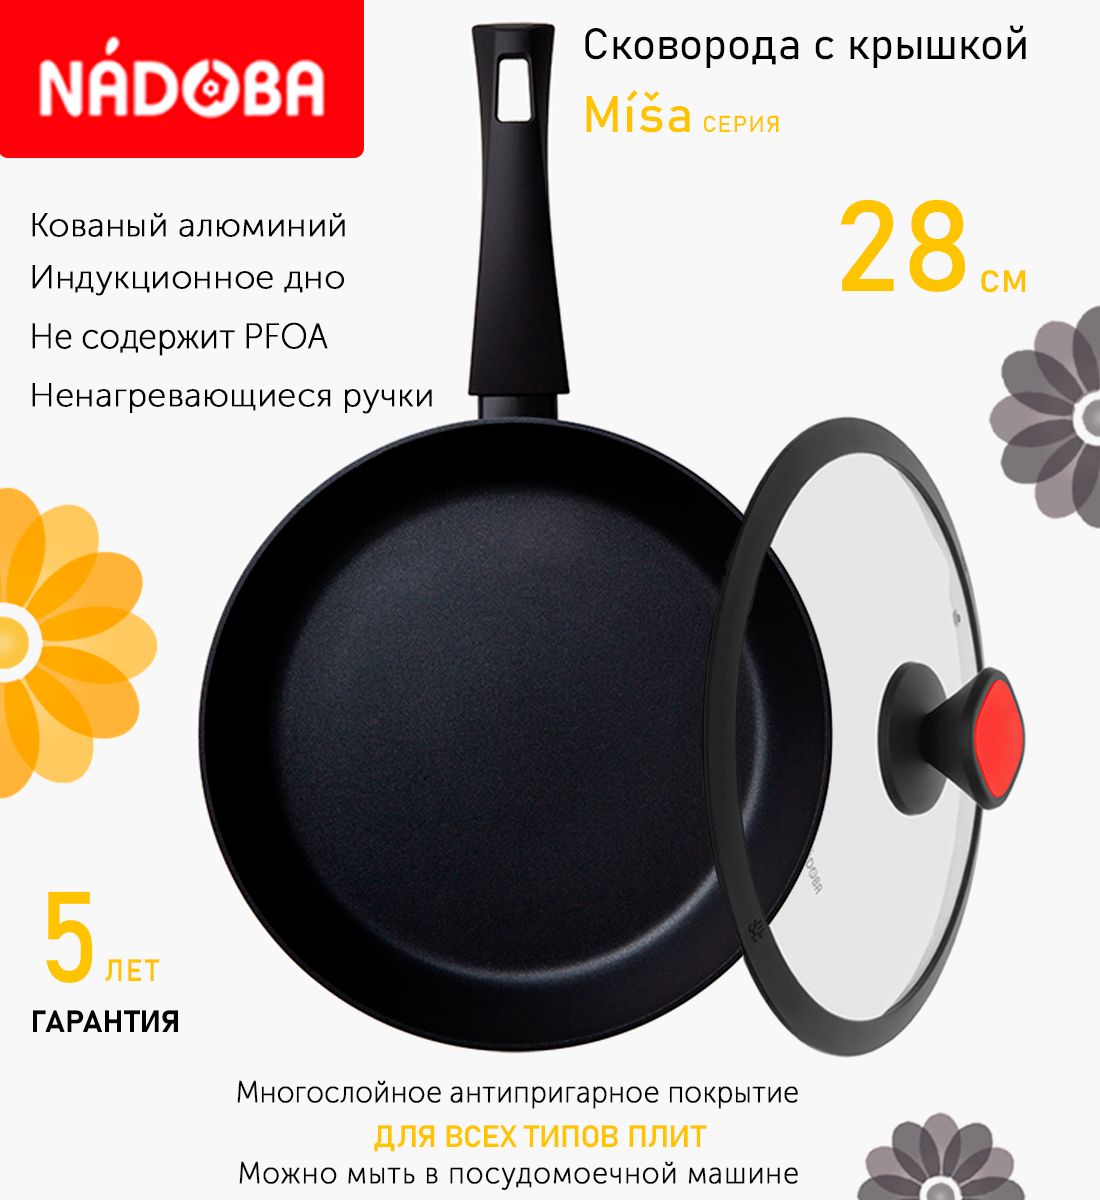 Сковорода с крышкой NADOBA 28 см серия Misa